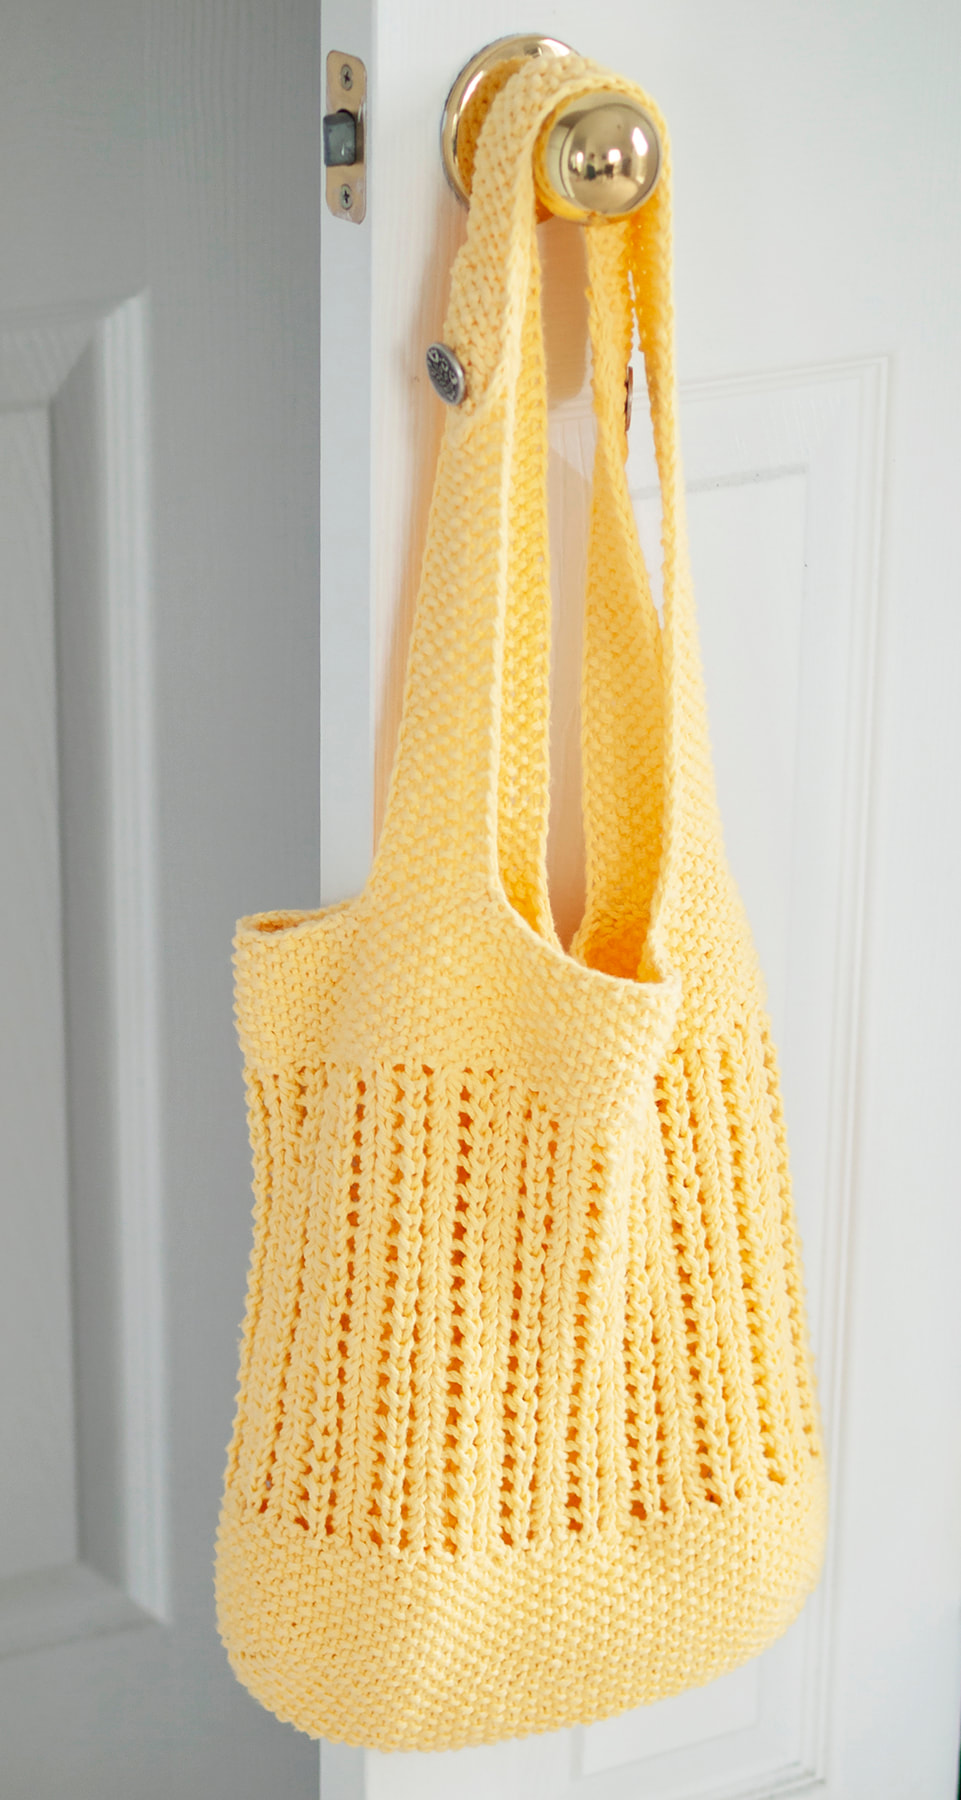 BYOB Market Bag Knitting Pattern by Wyndlestraw Designs